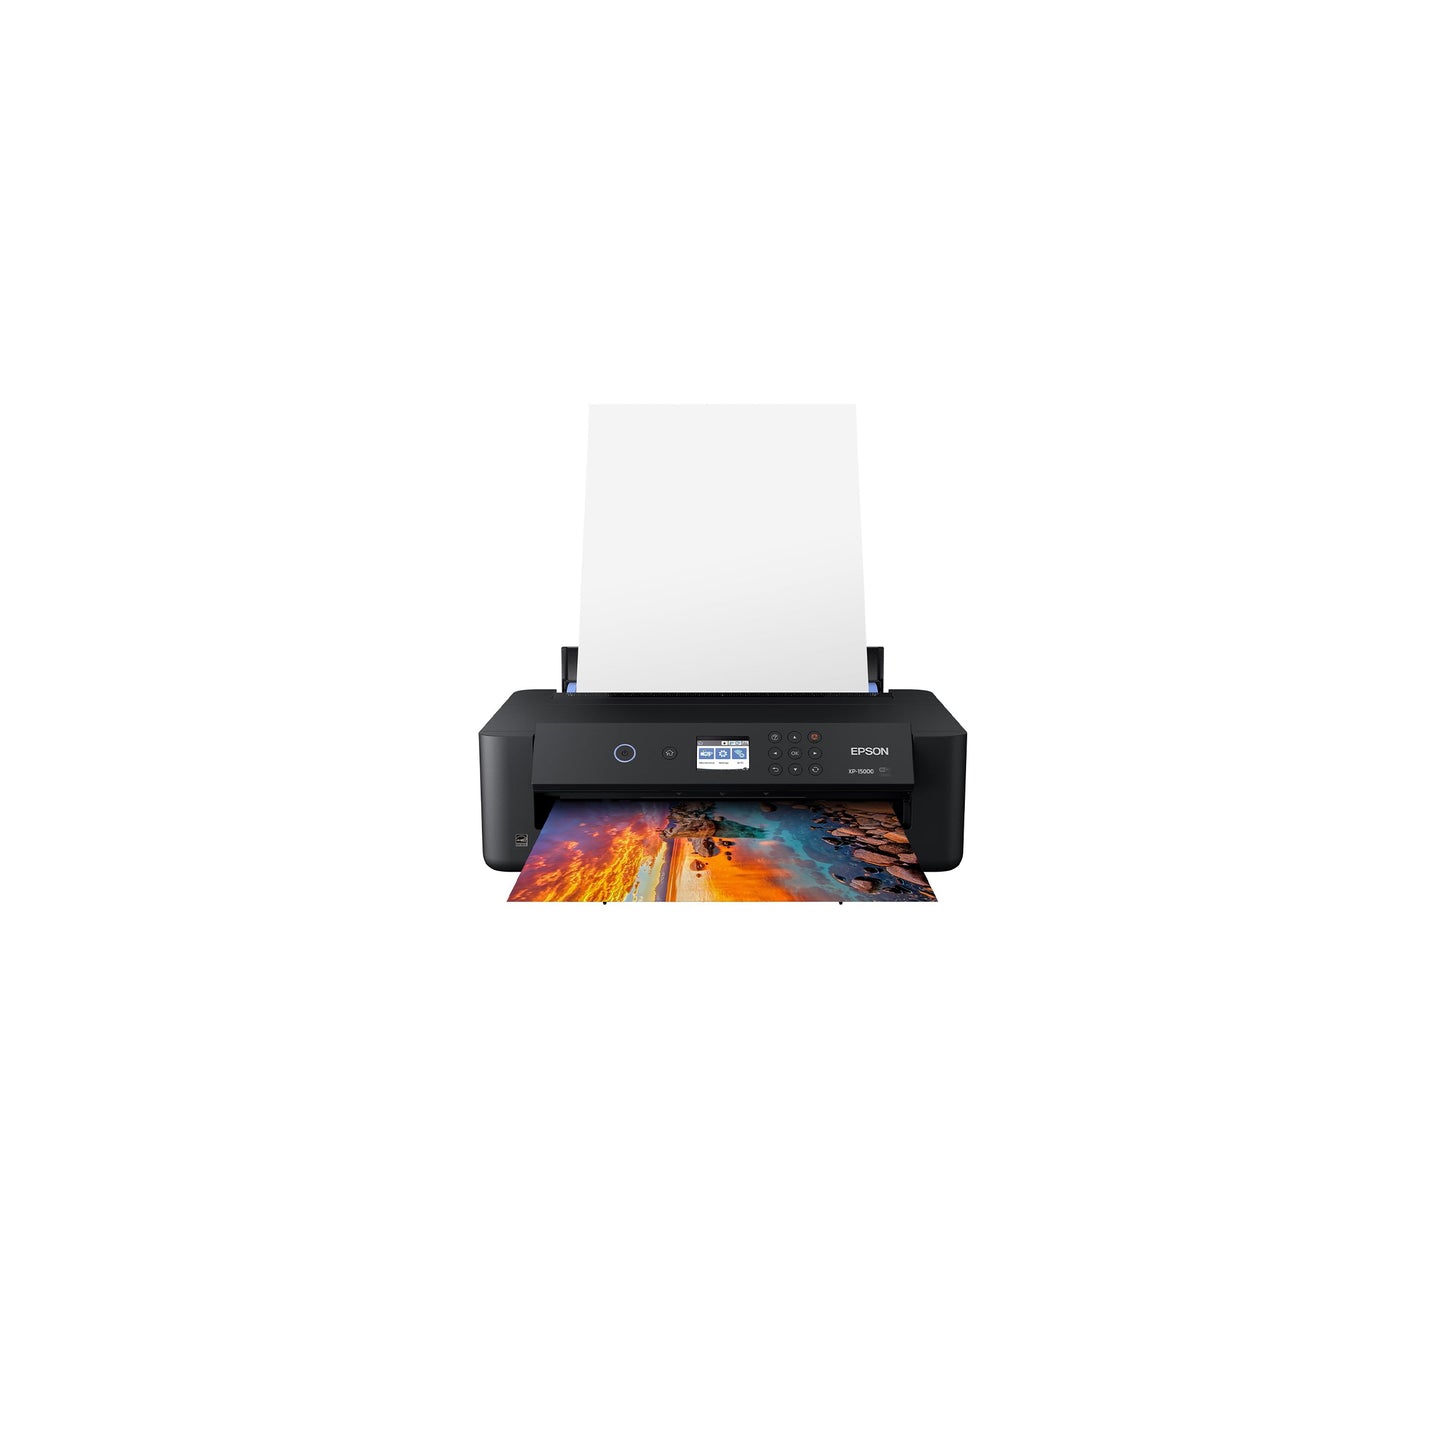 طابعة Epson Expression Photo HD XP-15000 اللاسلكية الملونة ذات التنسيق العريض، جاهزة للتجديد من Amazon Dash، أسود، كبير 